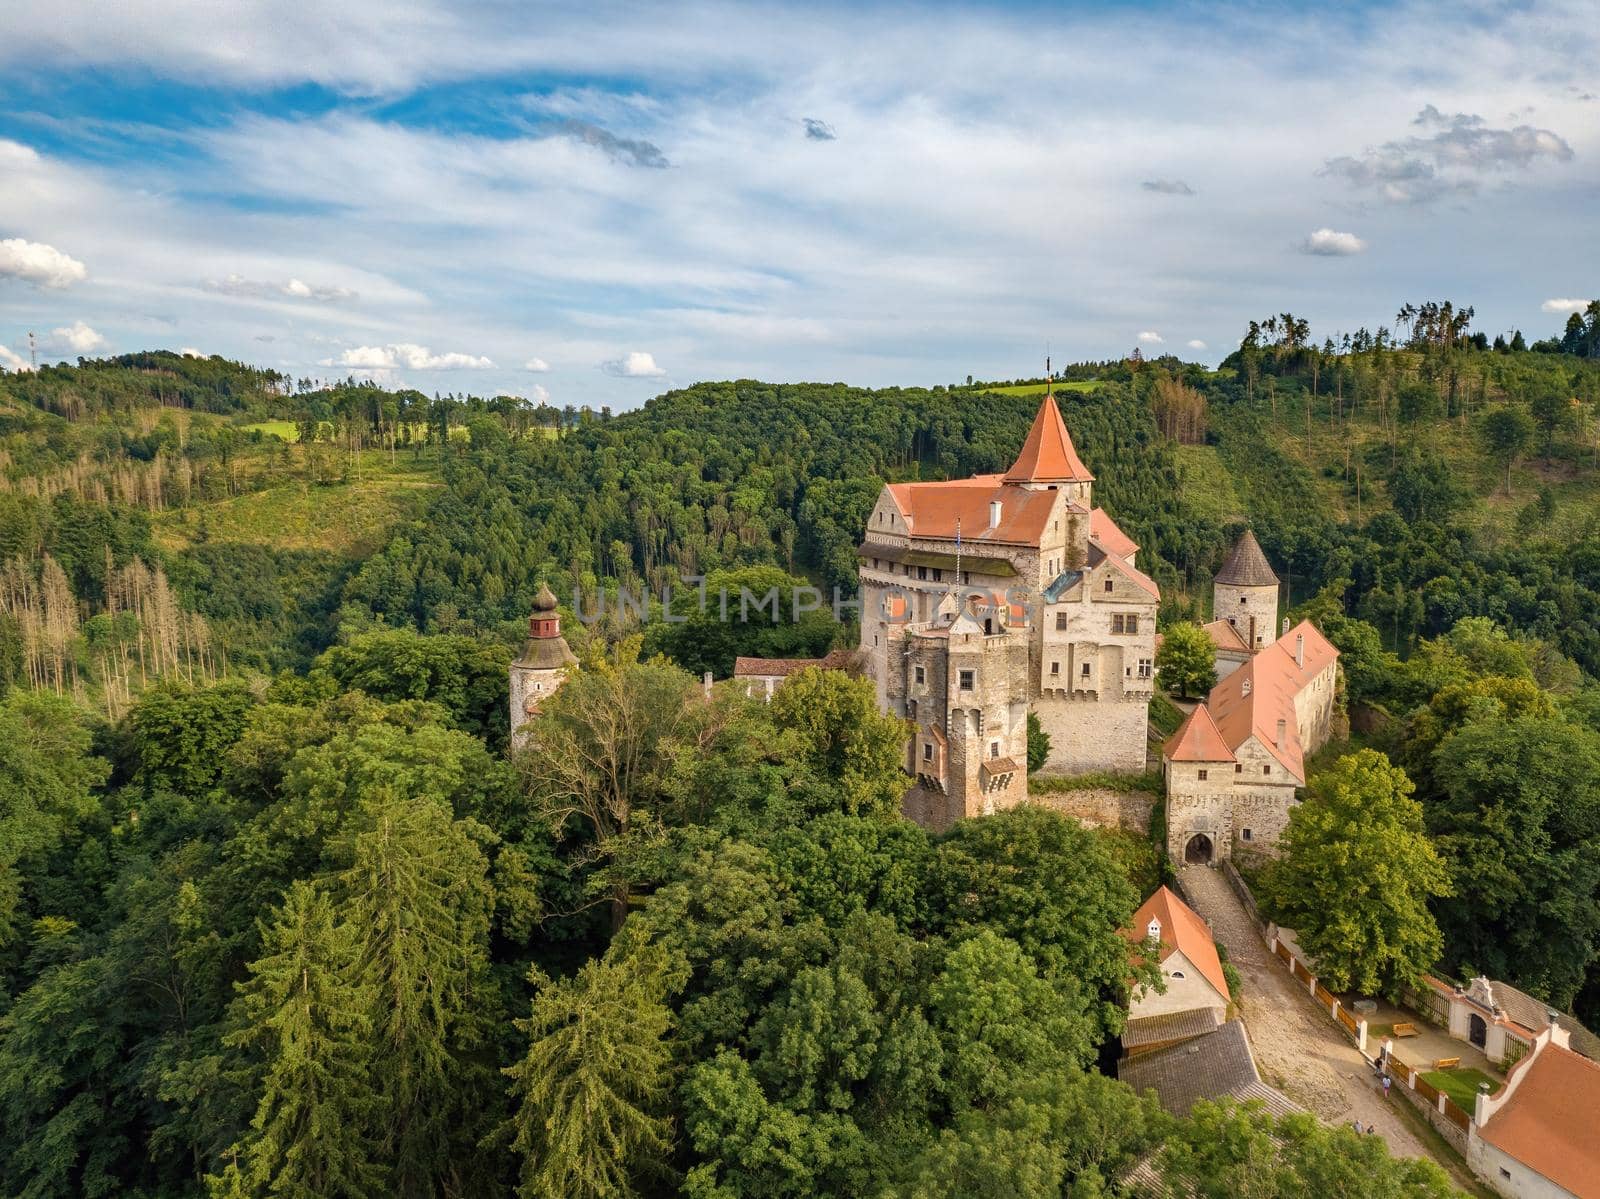 historical medieval castle Pernstejn, Czech Republic by artush